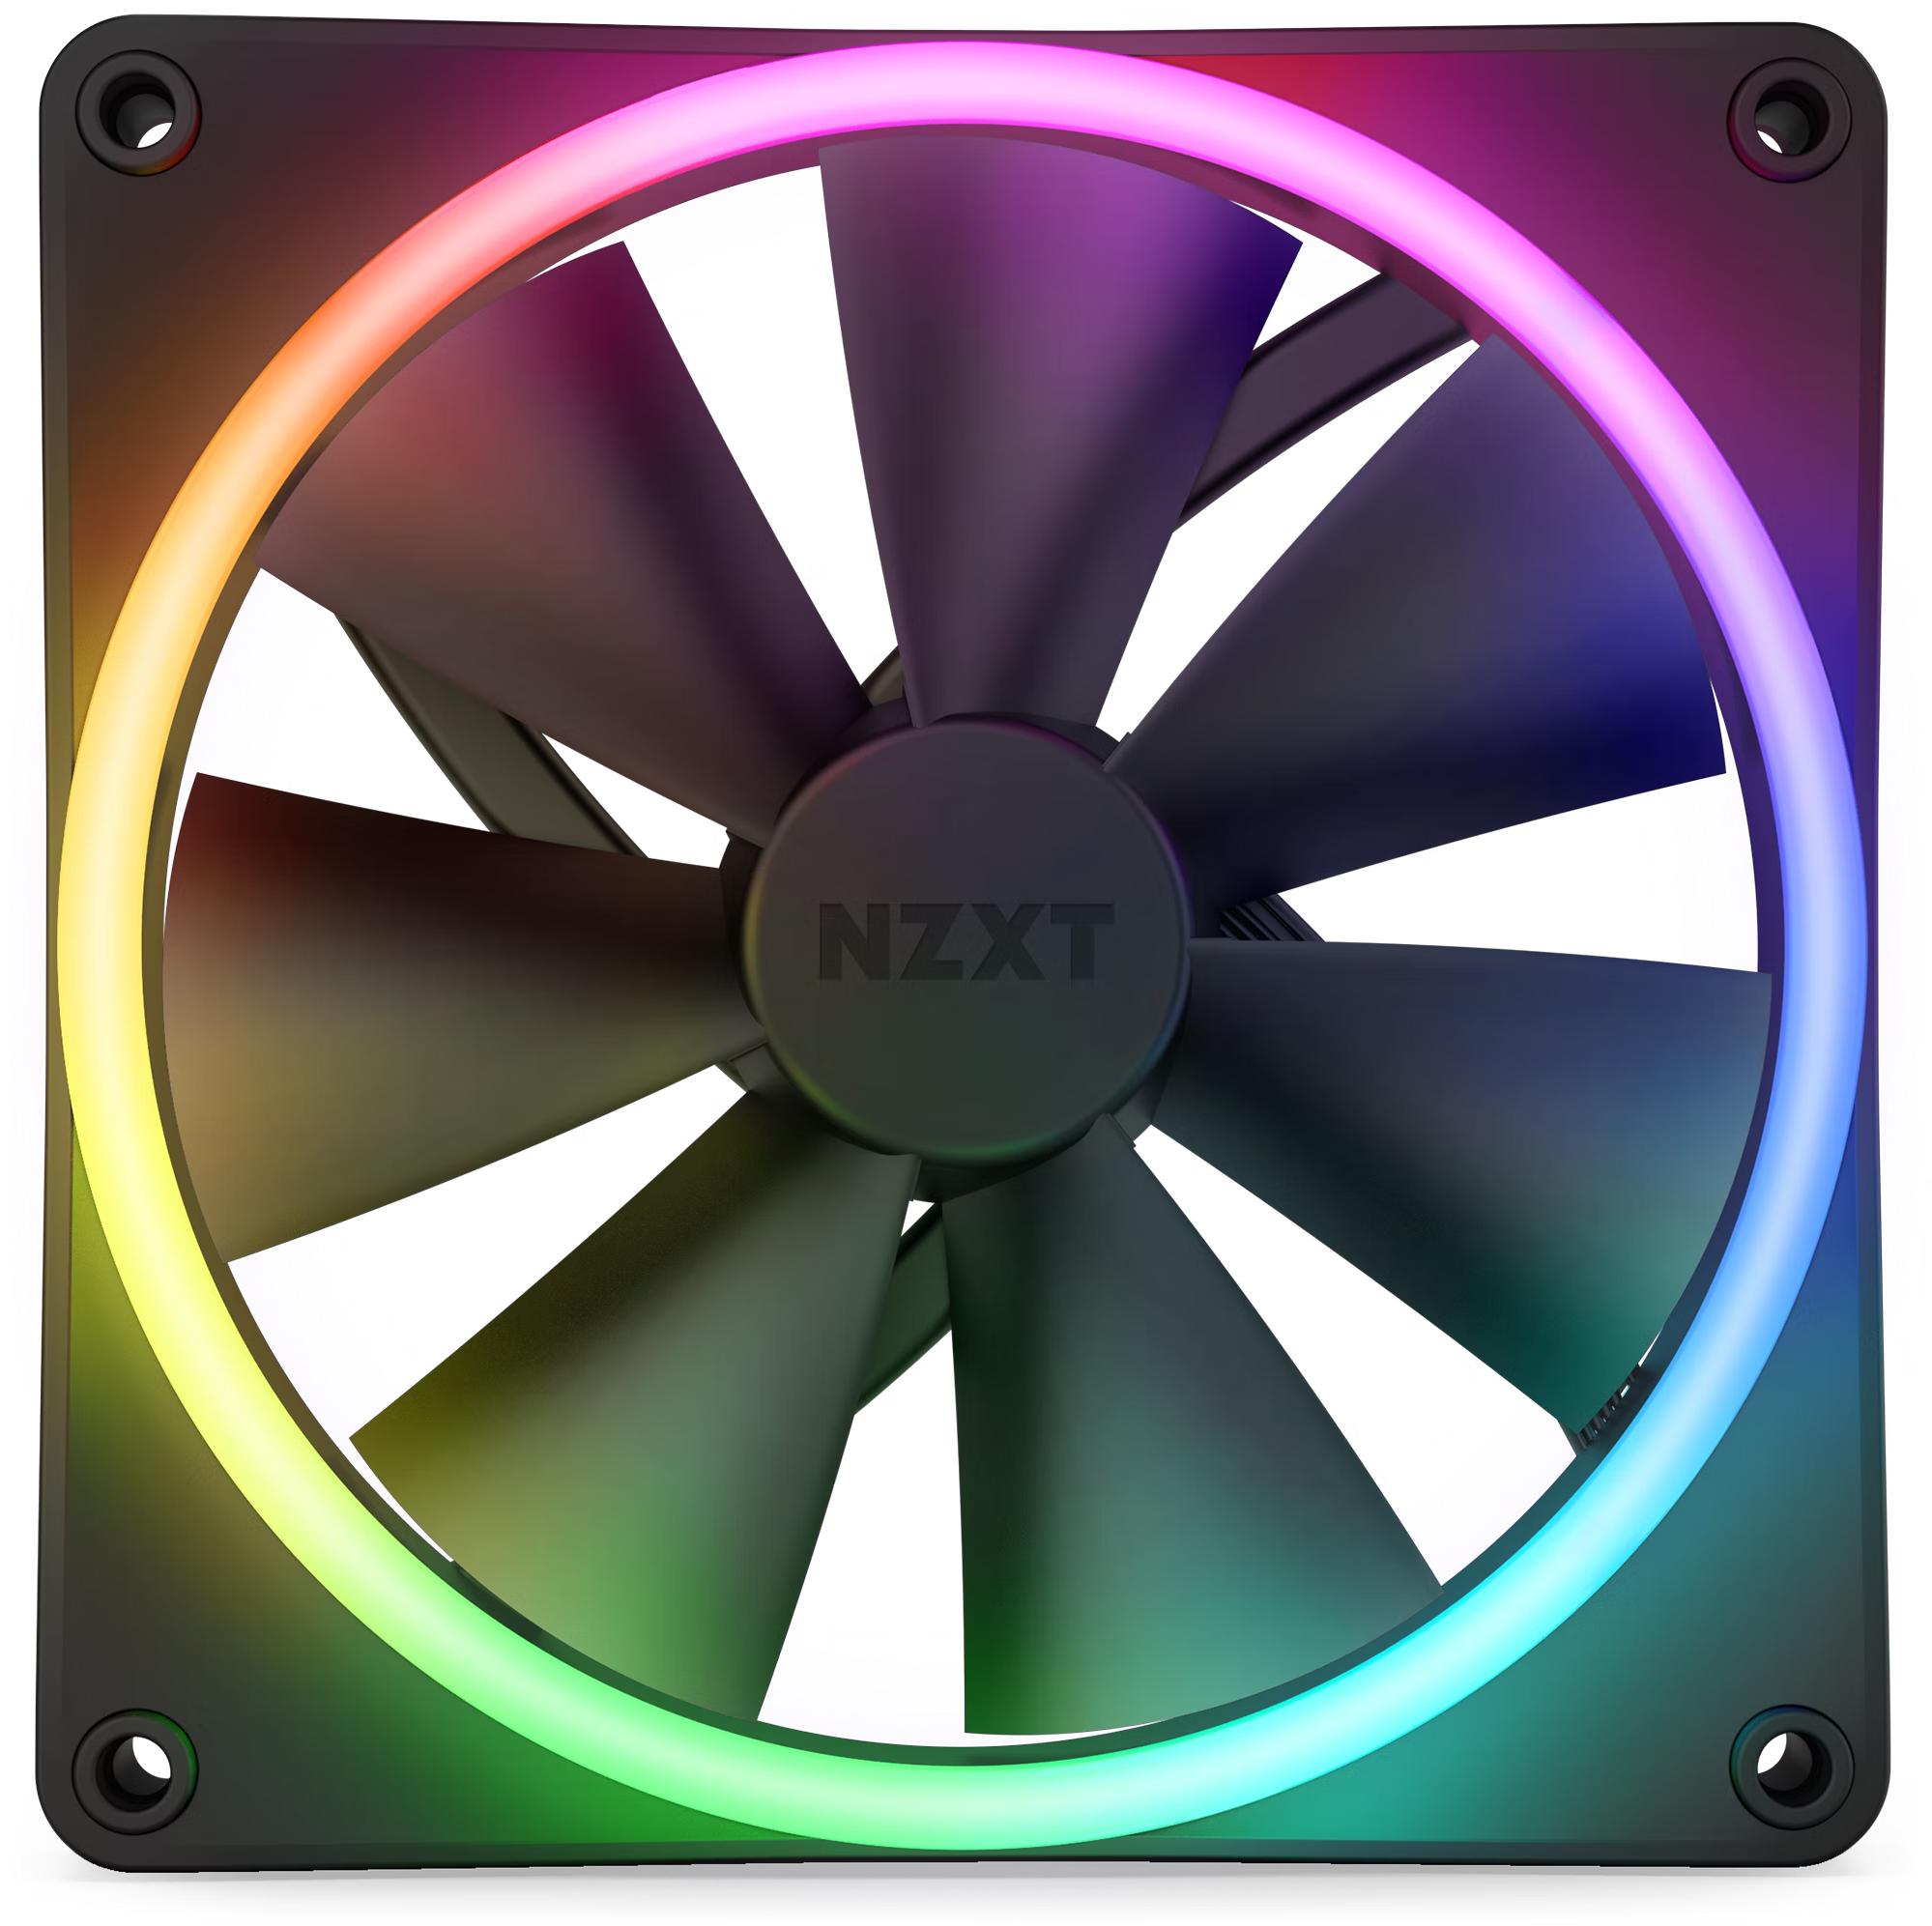 NZXT - Ventilador NZXT F140 RGB DUO 140mm c/Controladora RGB Negro